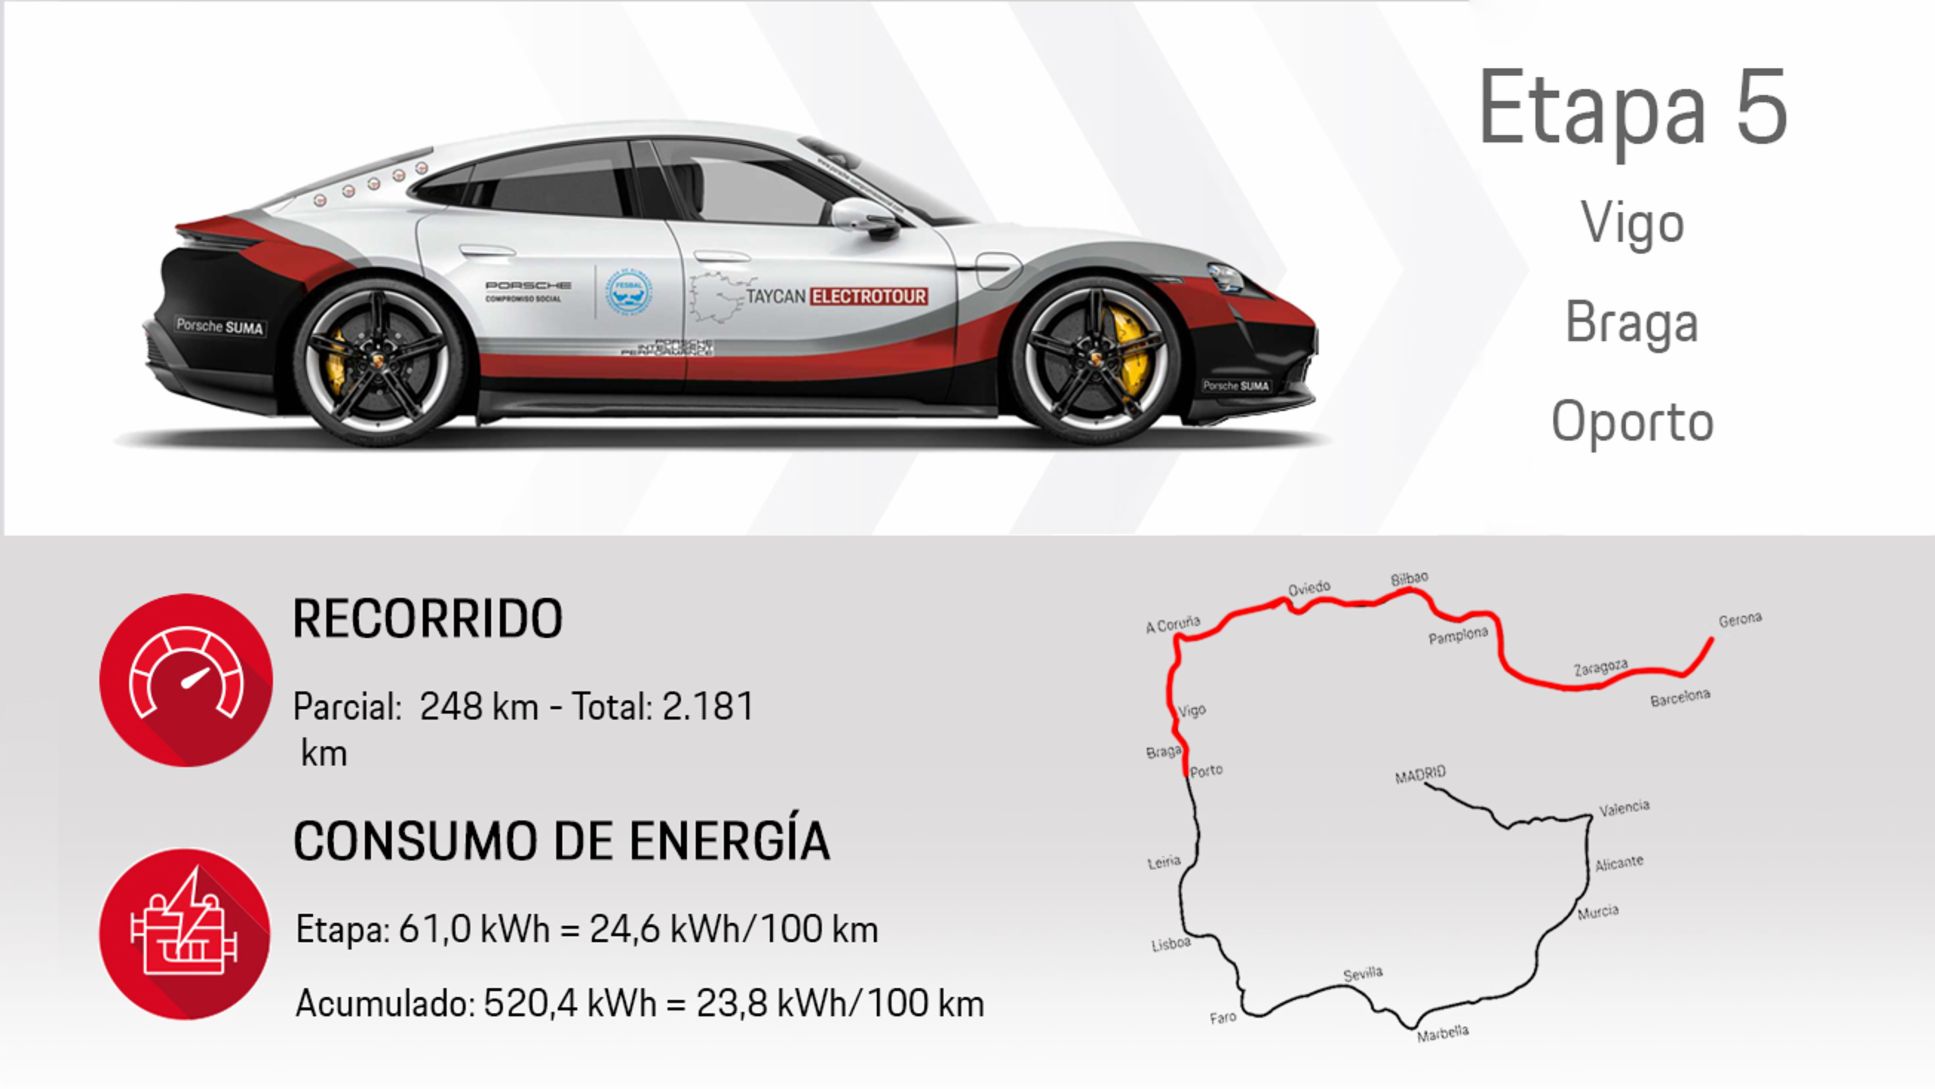 Taycan Electrotour, 2020, Porsche Ibérica